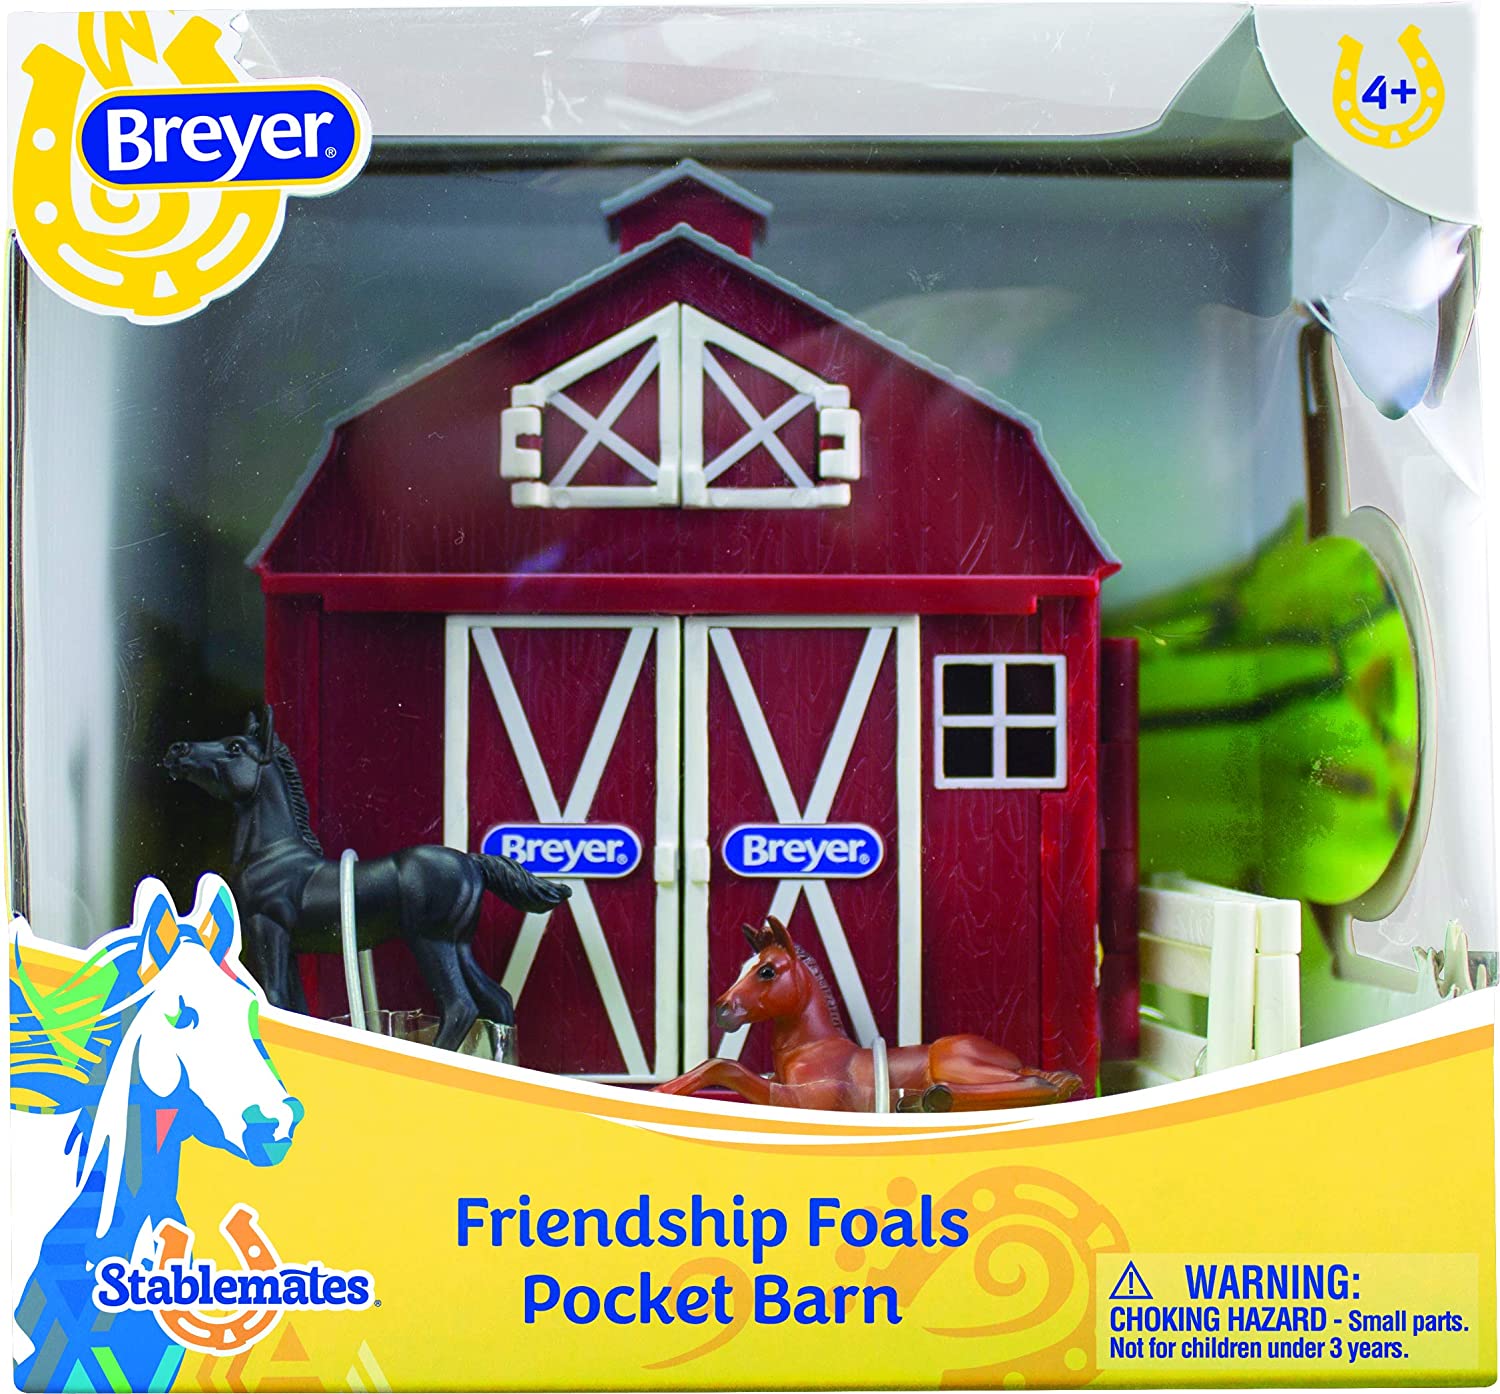 Breyer Friendship Foals Pocket Barn